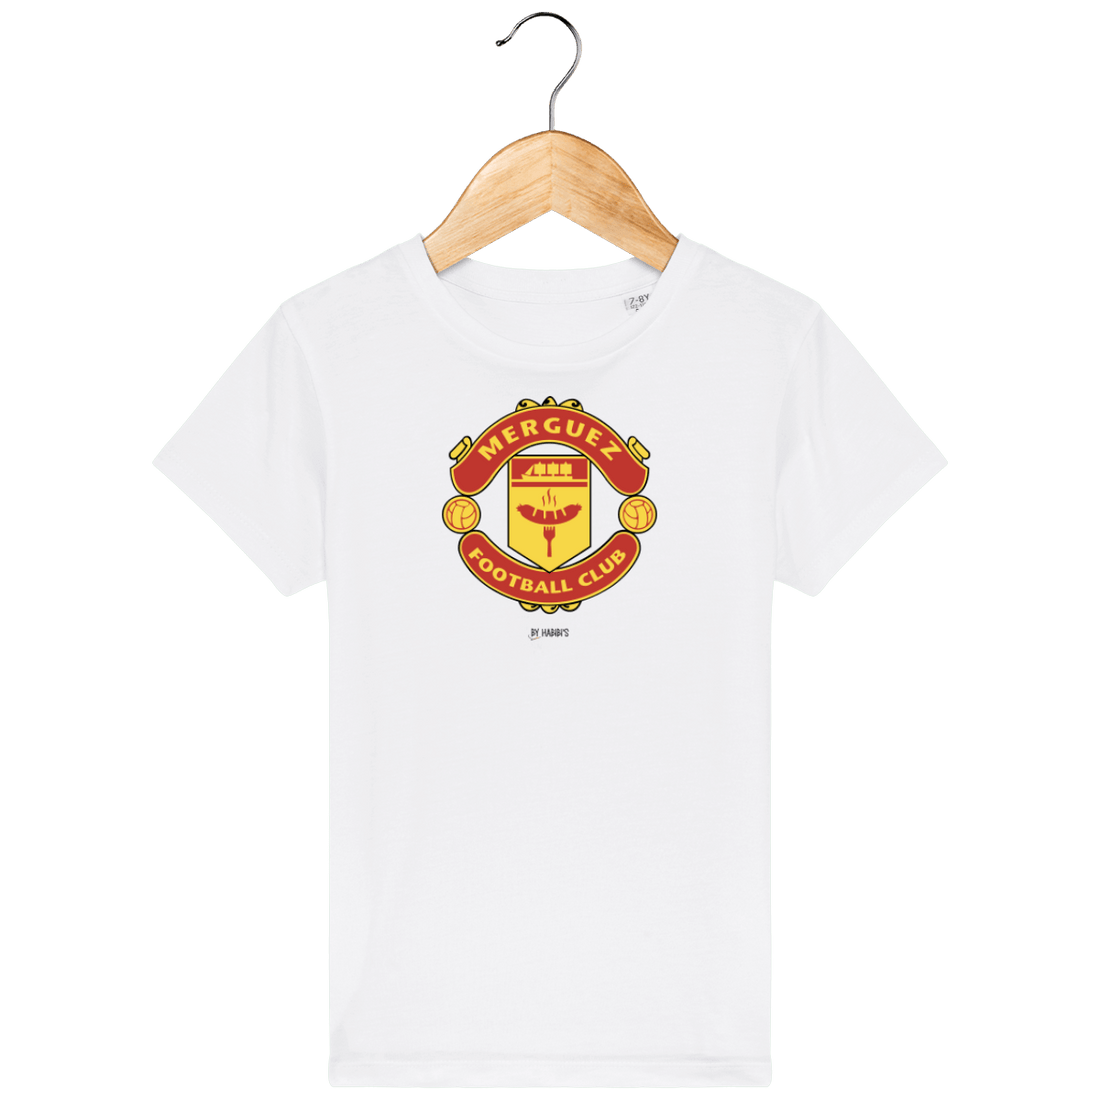 Enfant & Bébé>Tee-shirts - T-shirt Enfant <br> Merguez Football Club